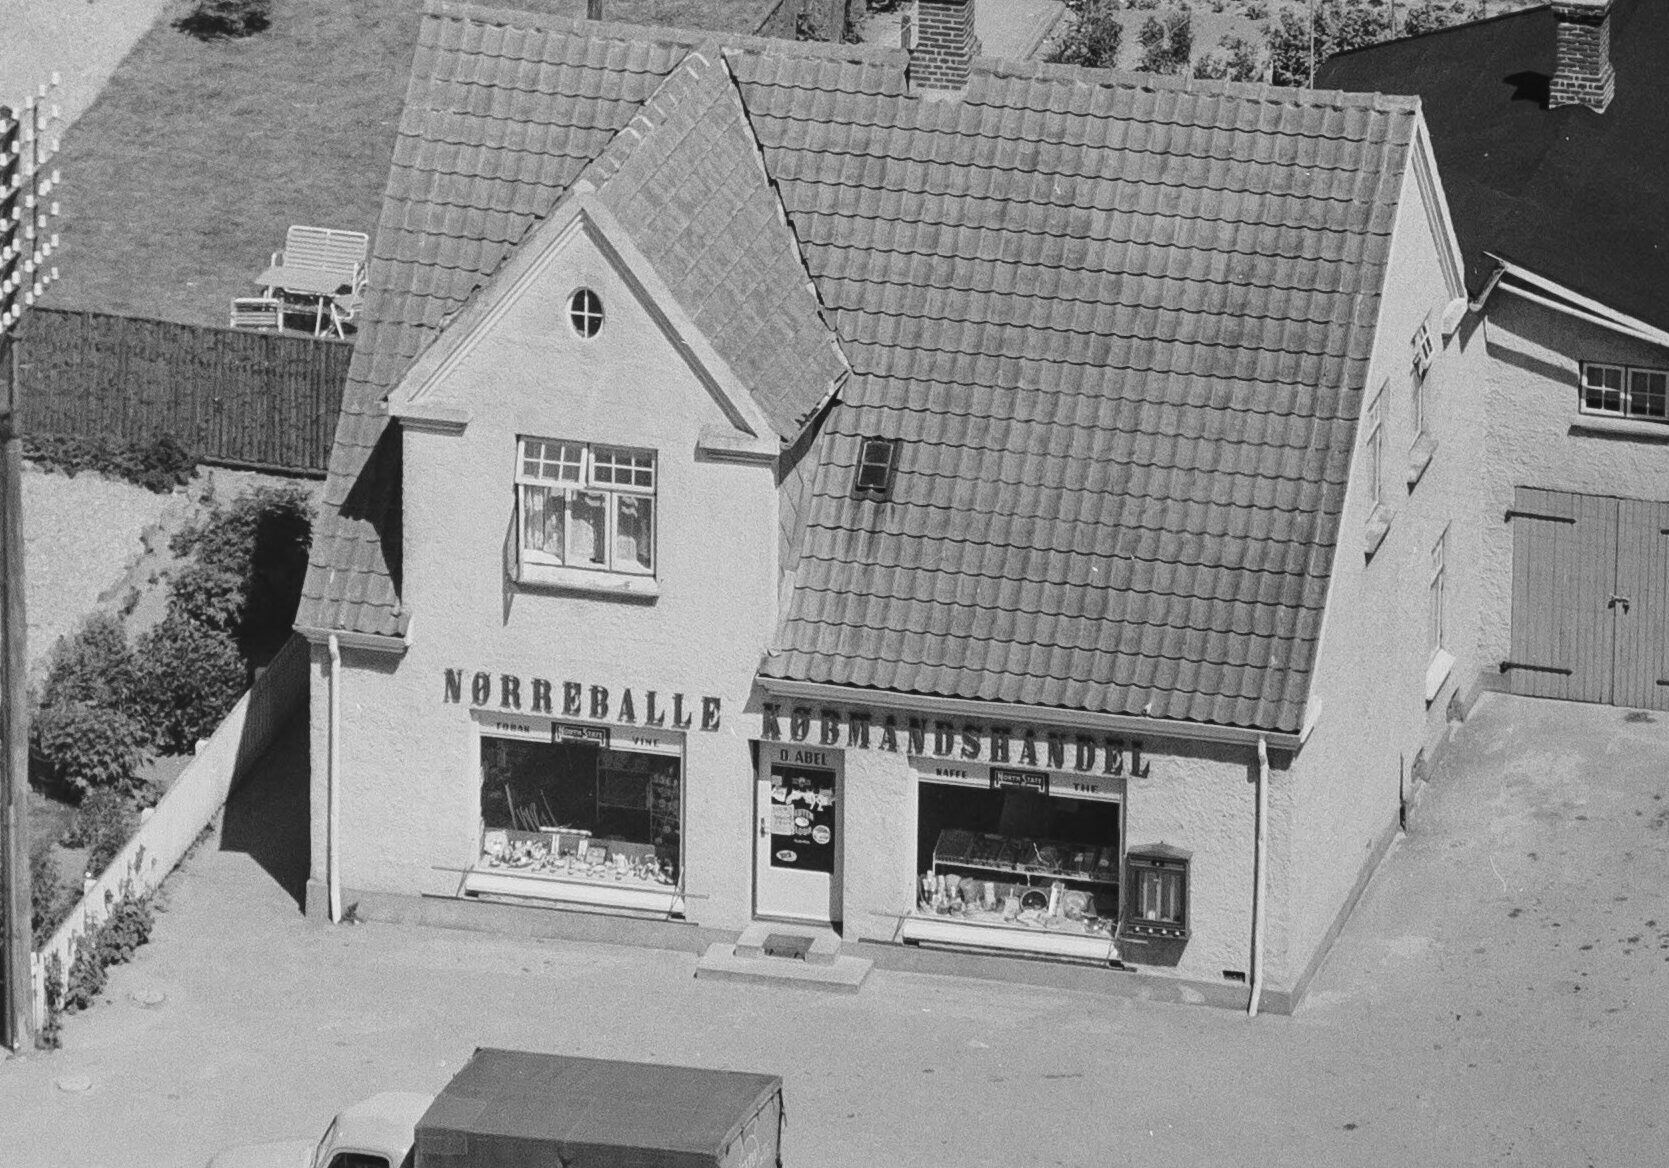 Luftfoto 1959 af Nørreballe Købmandshandel v/ Orla Abel, Vestre Landevej 128, Nørreballe